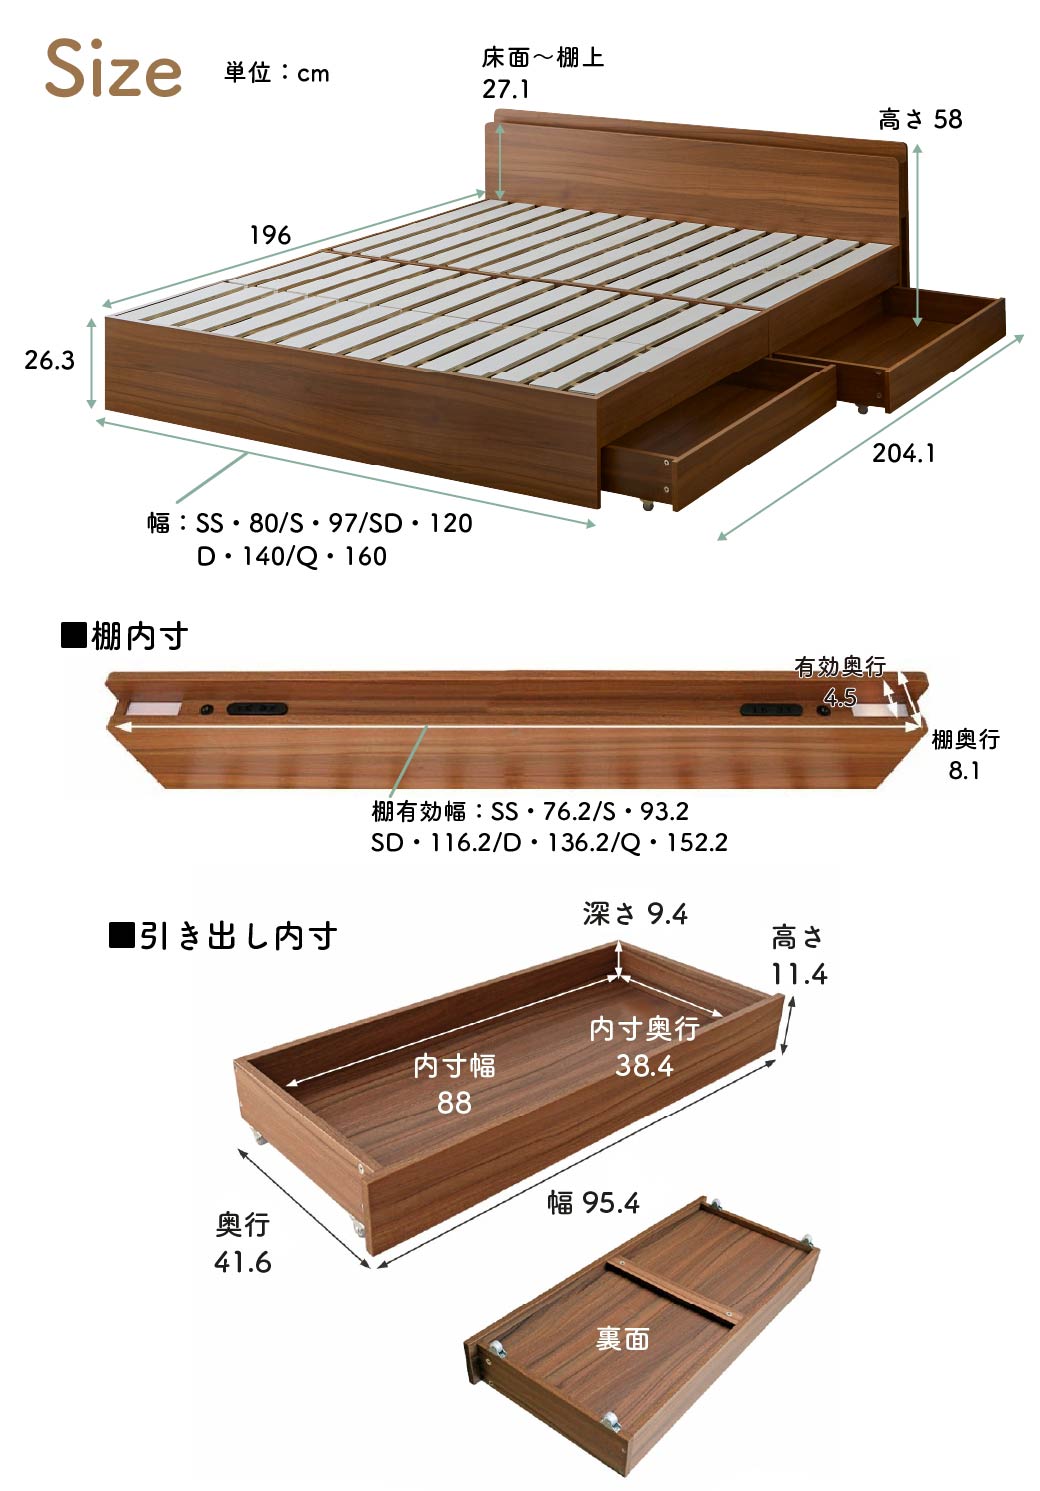 LYCKA2 リュカ2 すのこベッド シングル ポケットコイルマットレス付き 木製ベッド 引出し付き 照明付き 棚付き 2口コンセント